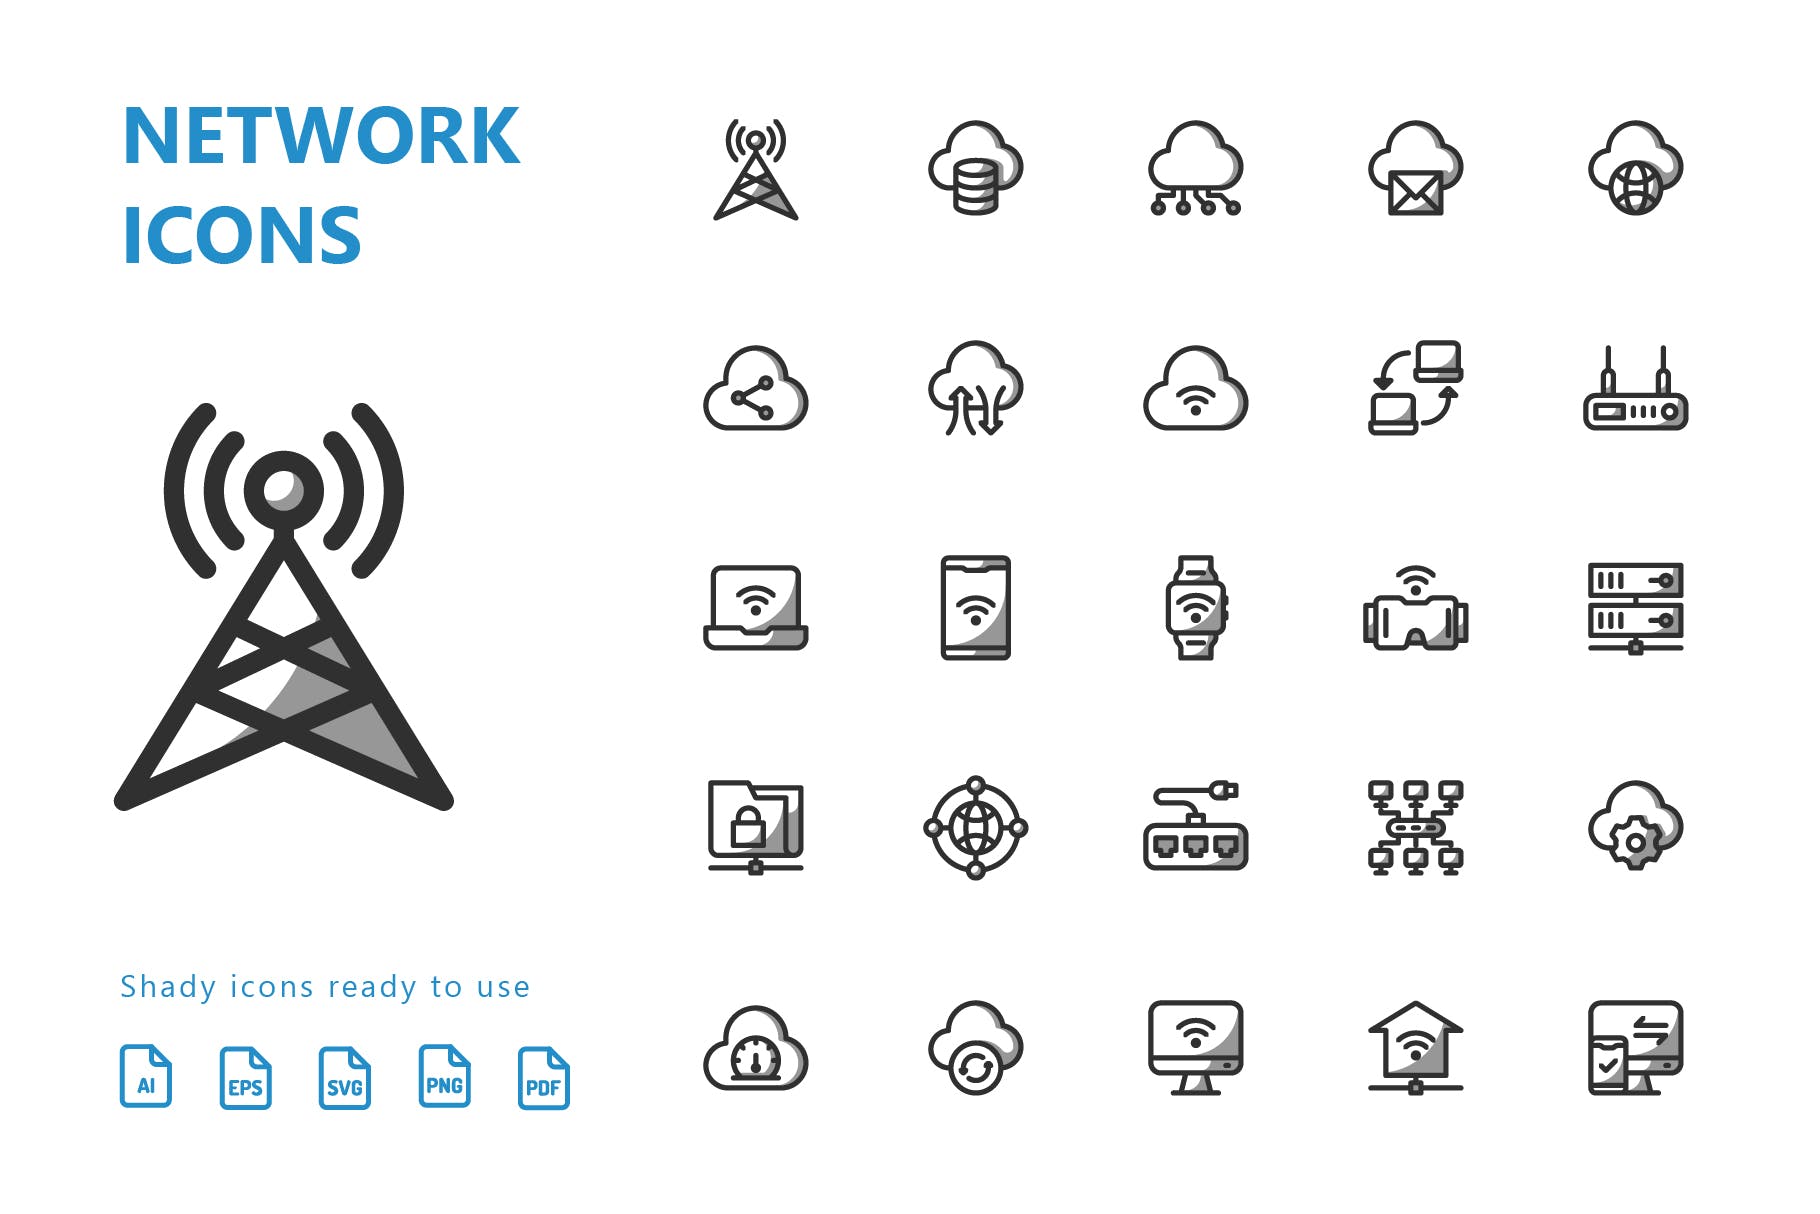 网络科技主题矢量阴影素材库精选图标 Network Shady Icons插图(2)